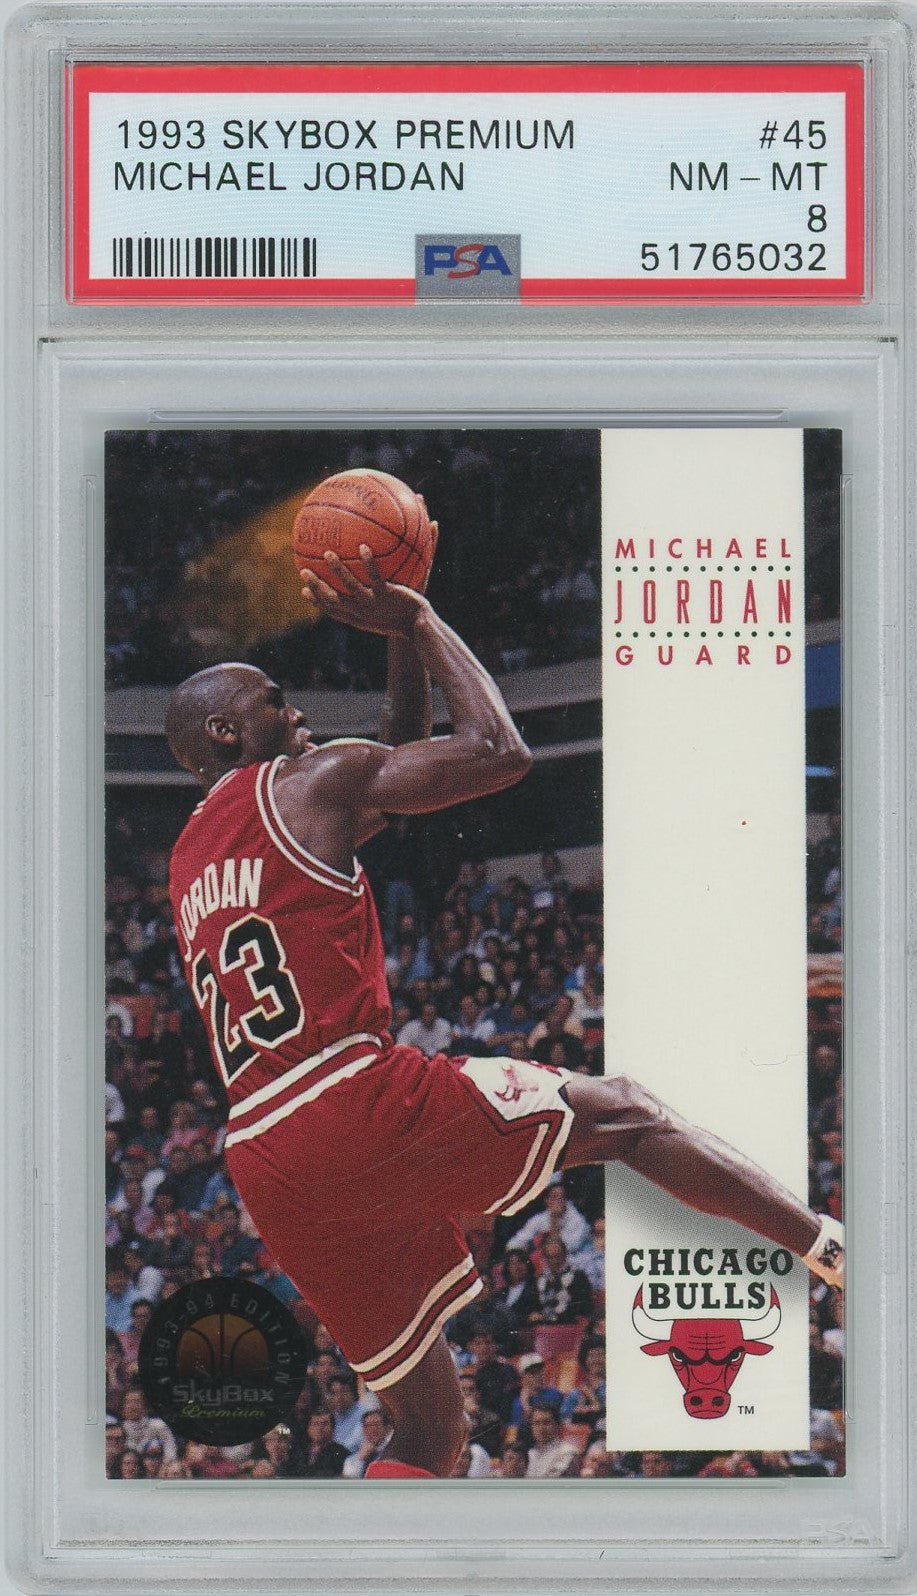 PSA 8 - 1993 Skybox Premium - Michael Jordan - #45